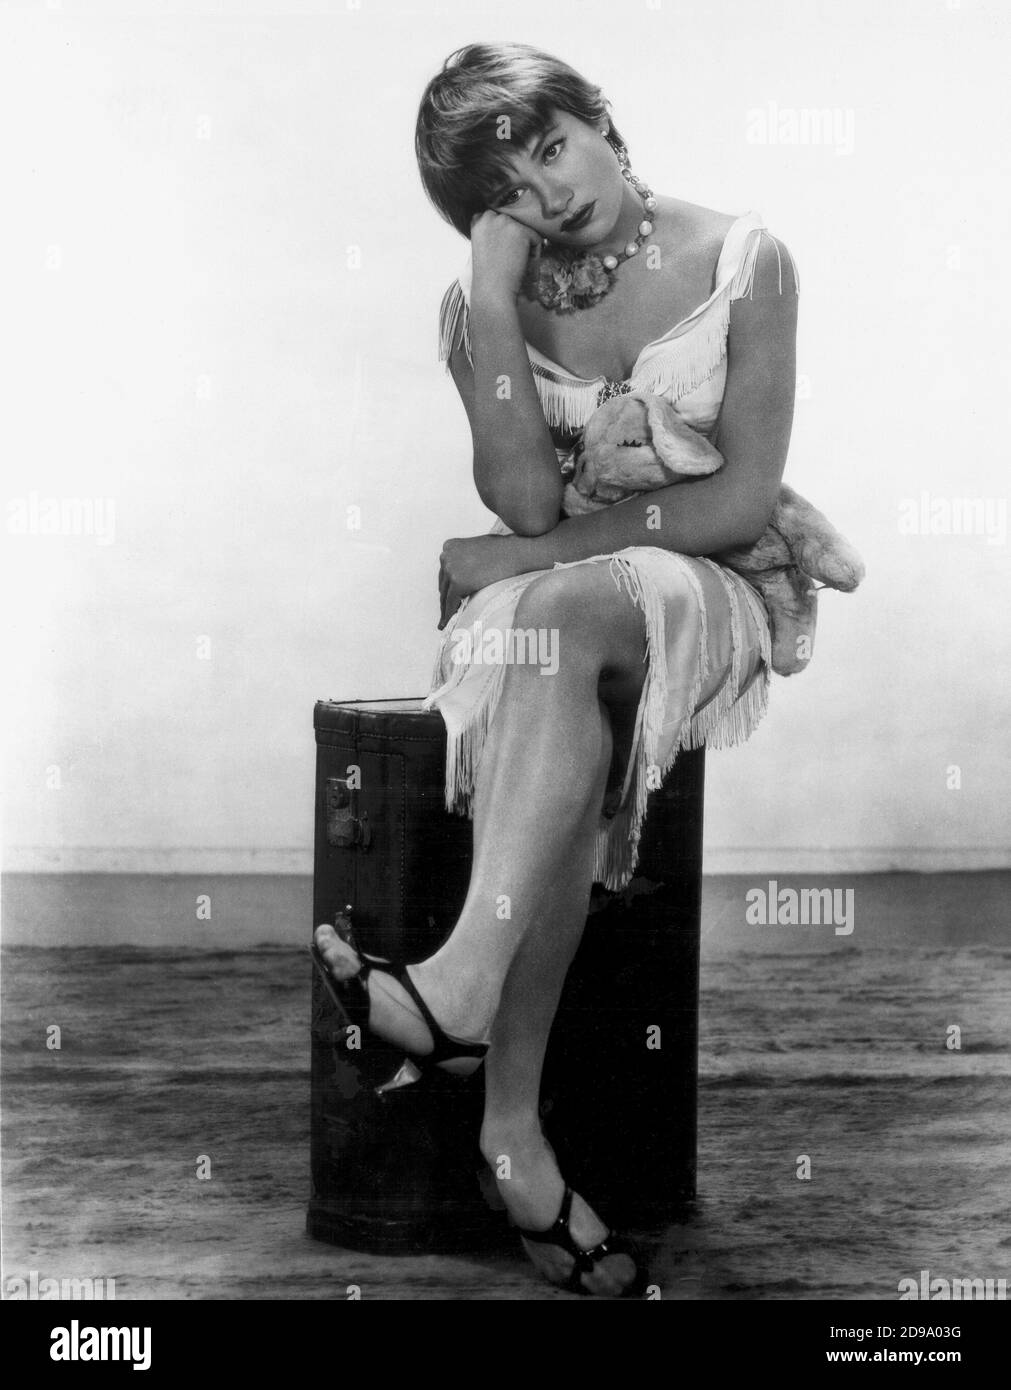 1960 , USA : l'attrice e ballerino cinematografico hollywoodiano SHIRLEY MacLaine ( nato nel 1934 ) NelL'APPARTAMENTO di Billy Wilder - FILM - CINEMA - FILM - ritratto - ritratto - danza - danza - cantante - attrice - MAC LAINE - Mc Laine - McLaine - collana - collana - gioco - posa leggy - peluche - orsacchiotto - frangia Frange - frange - frangia - noia - annoiato - annoiata - noia - tedium - annoiato - sandali - sandali - ballerina --- Archivio GBB Foto Stock